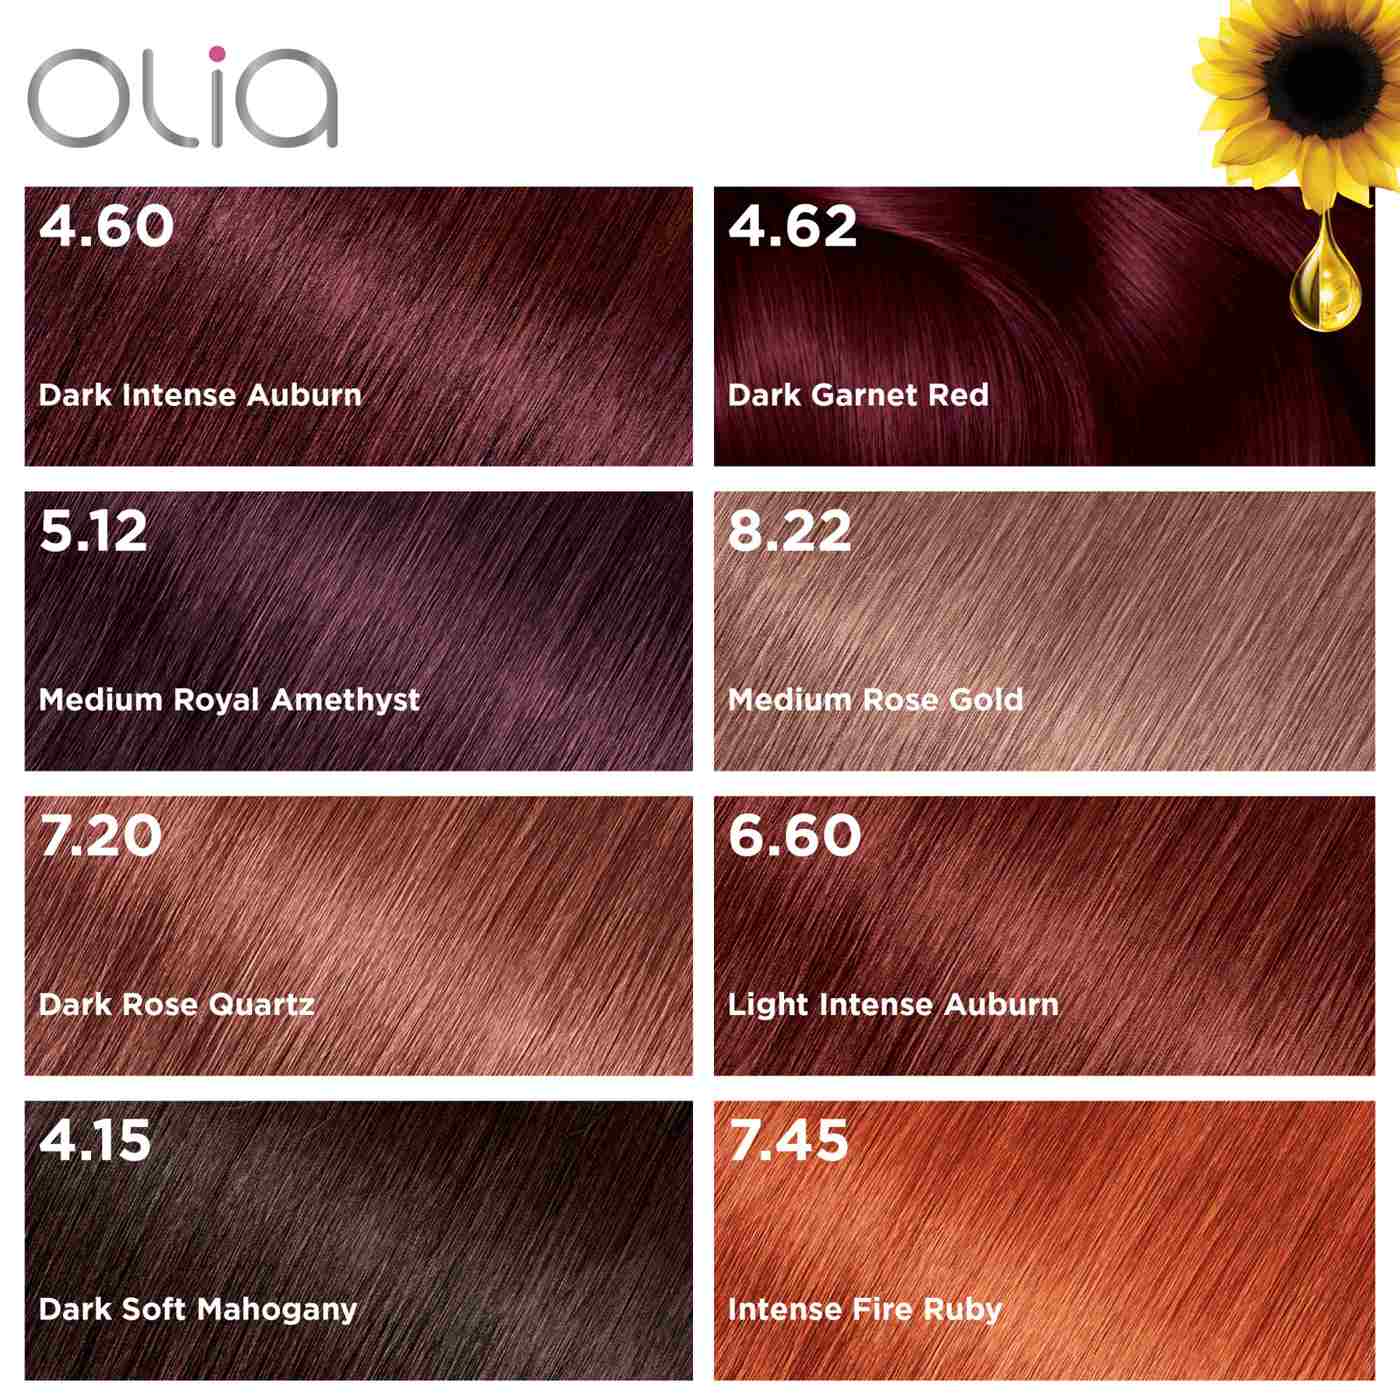 Garnier Olia Oil Powered Ammonia Free Permanent Hair Color  Dark  Intense Auburn - Shop Hair Color at H-E-B